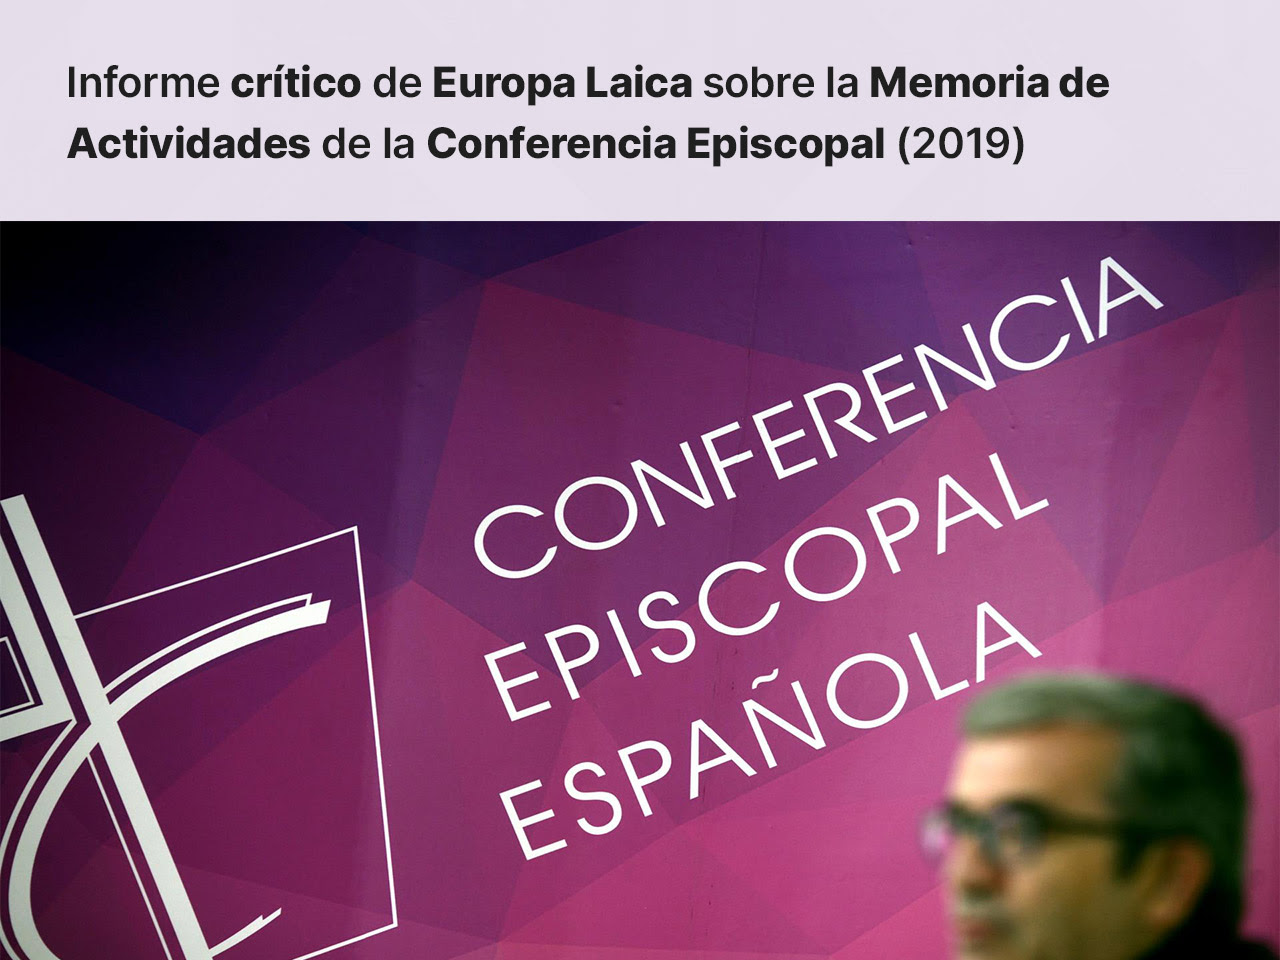 Europa Laica presenta el informe crítico sobre la Memoria de Actividades de la Conferencia Episcopal del año 2019